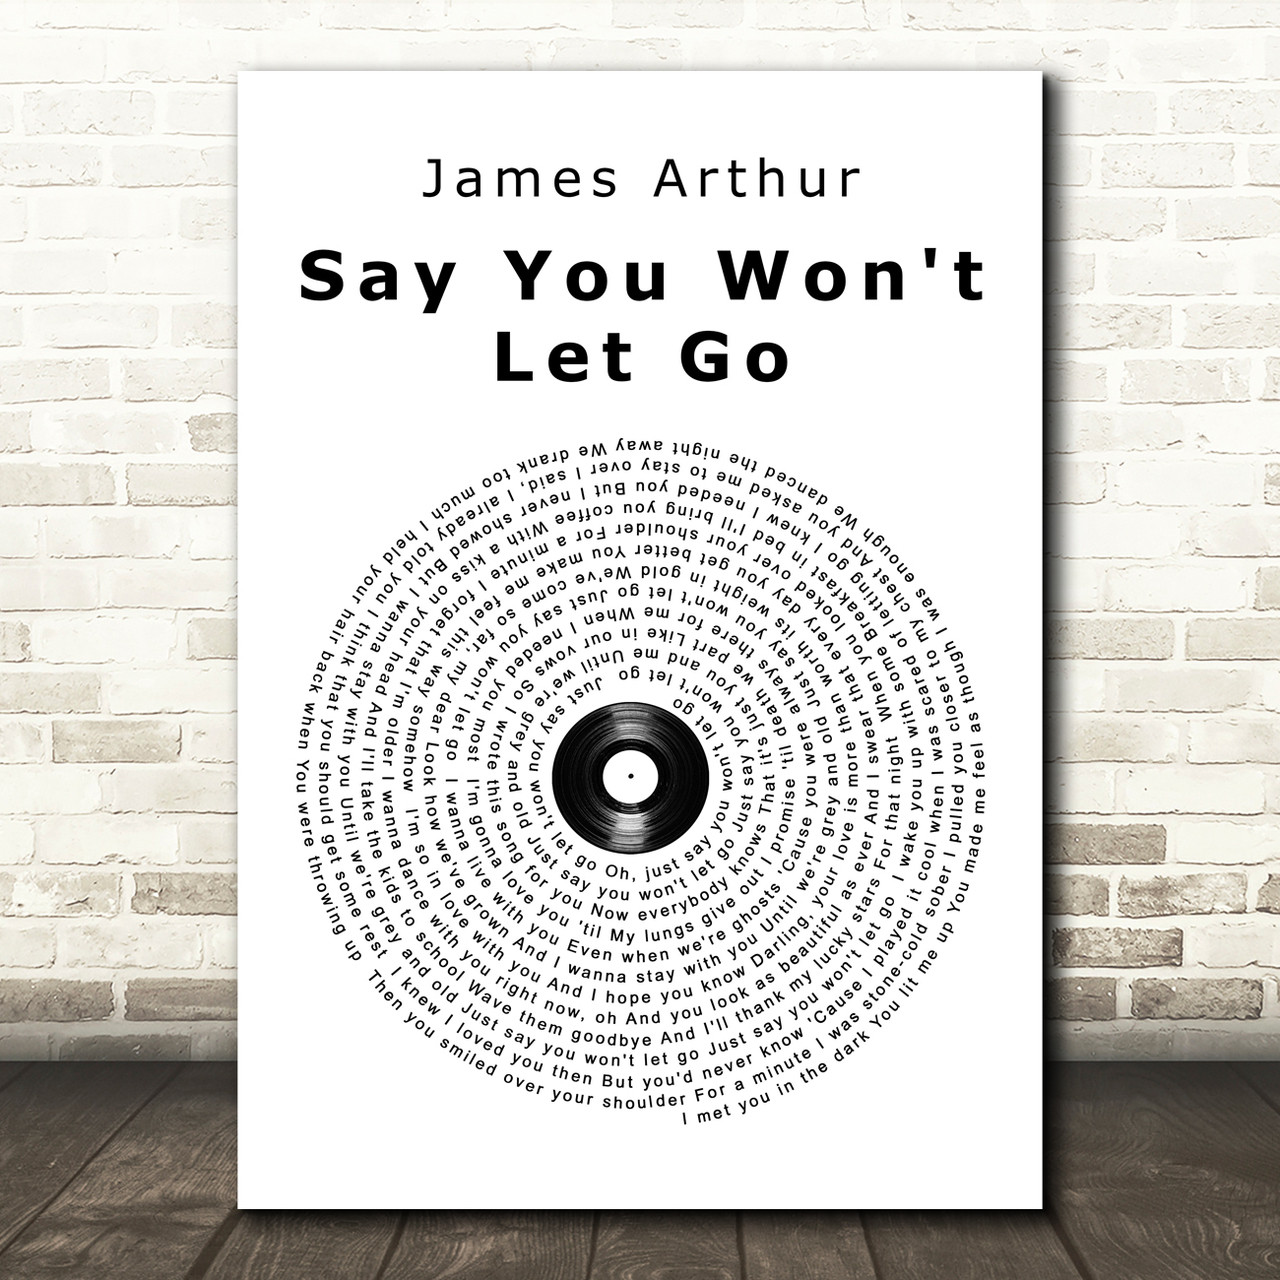 say you won't let go (James Arthur)